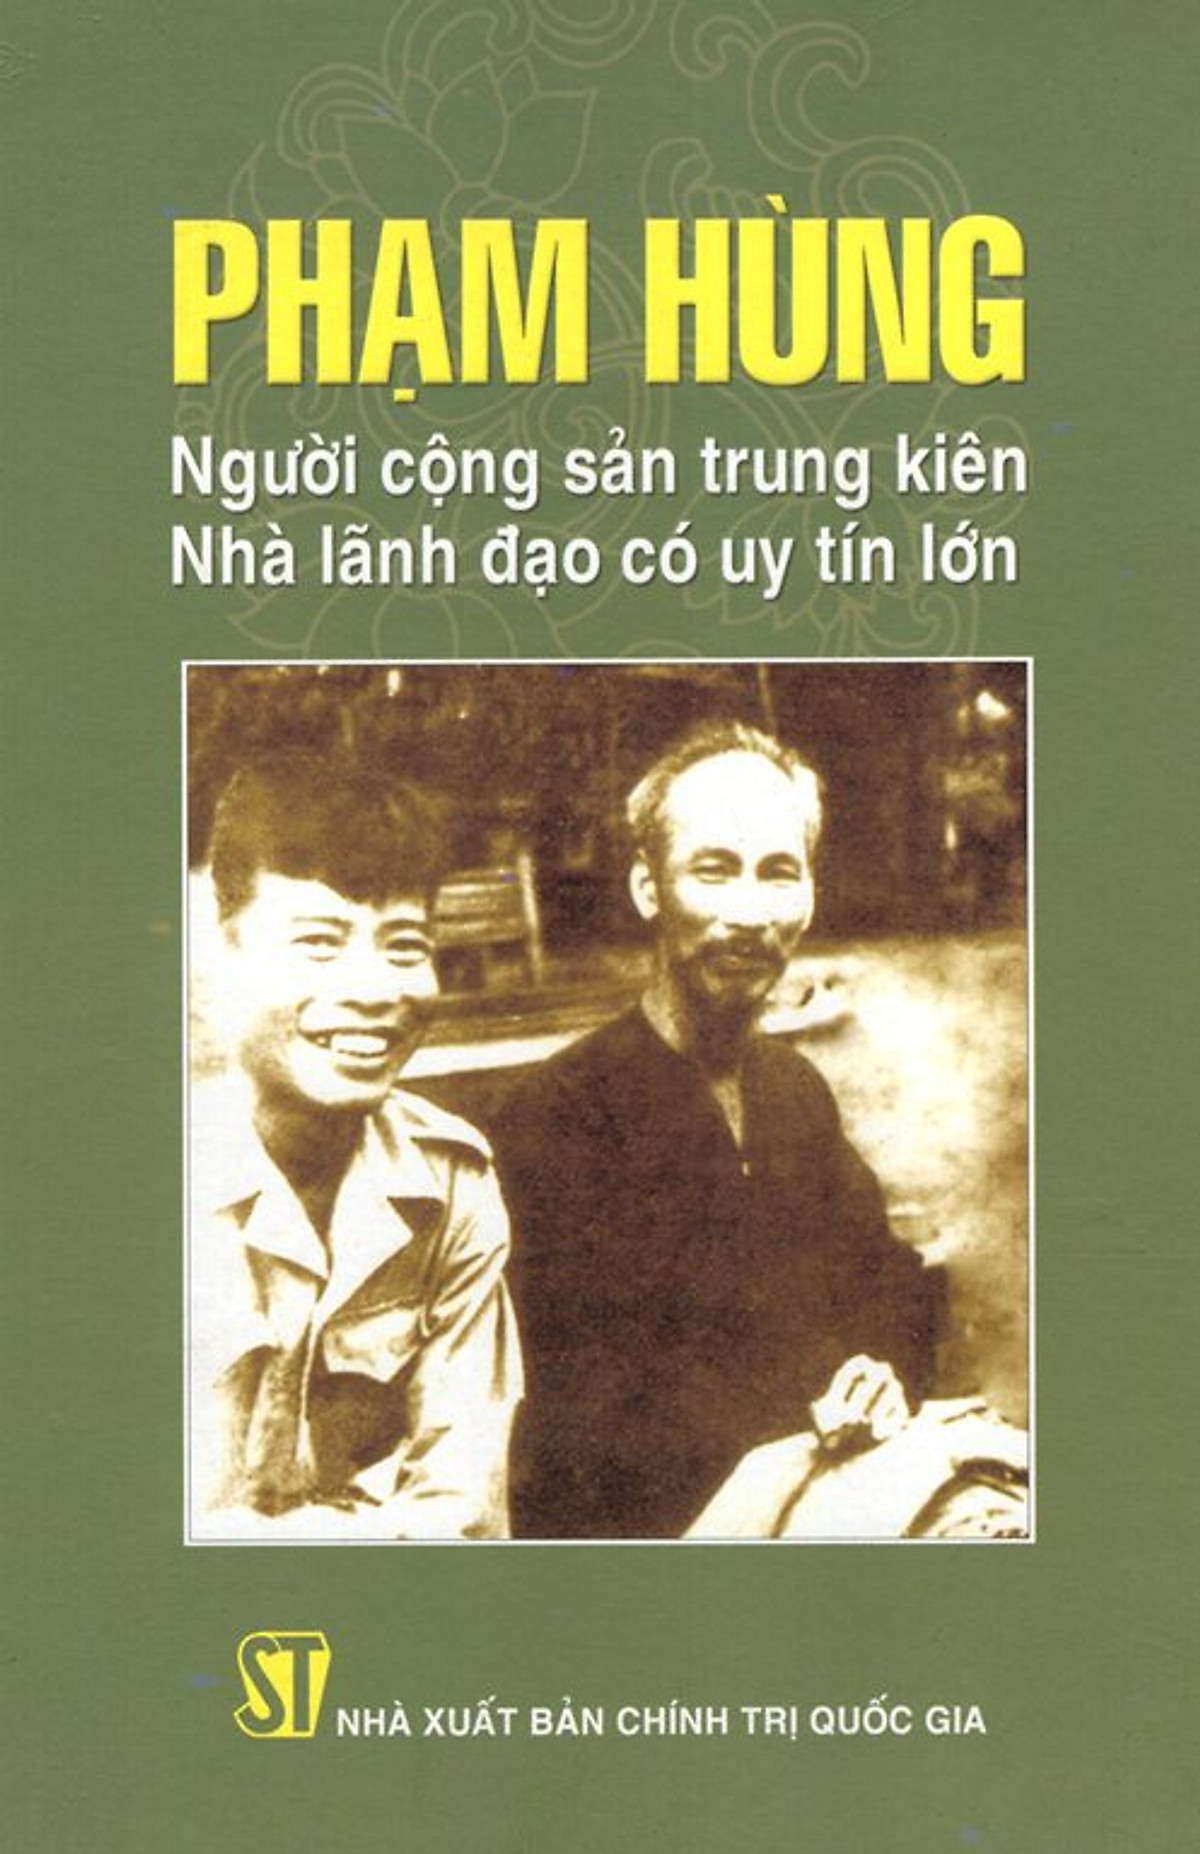 Phạm Hùng – Người cộng sản trung kiên, nhà lãnh đạo có uy tín lớn